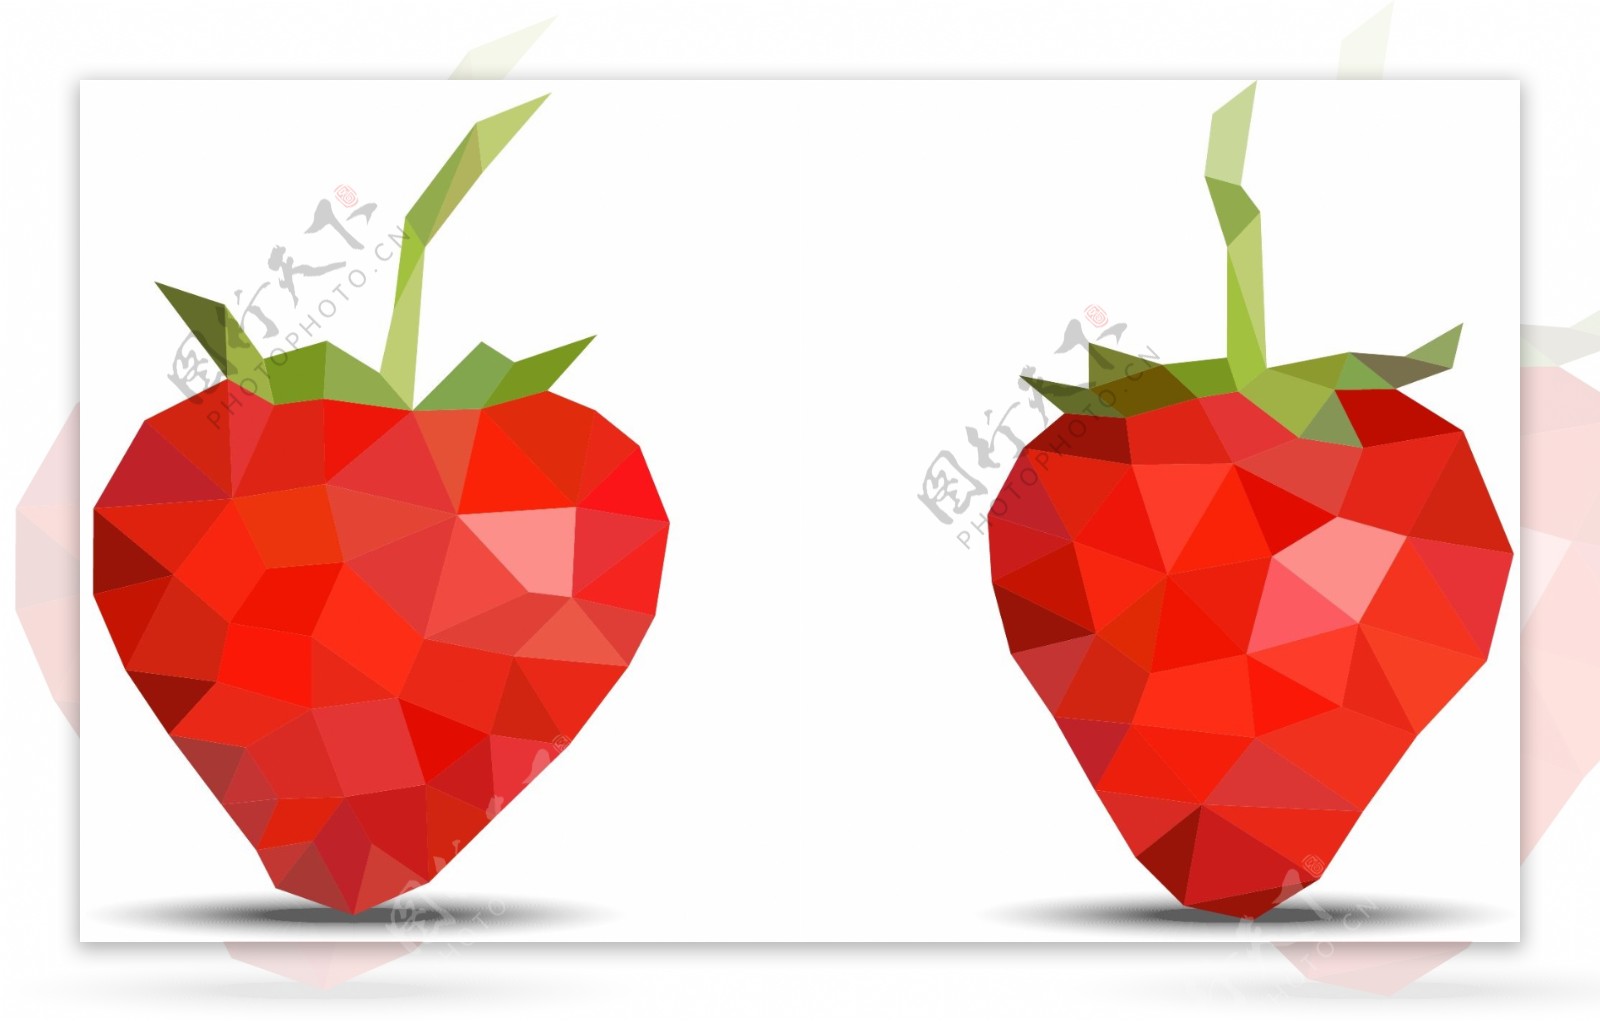 低聚设计的草莓